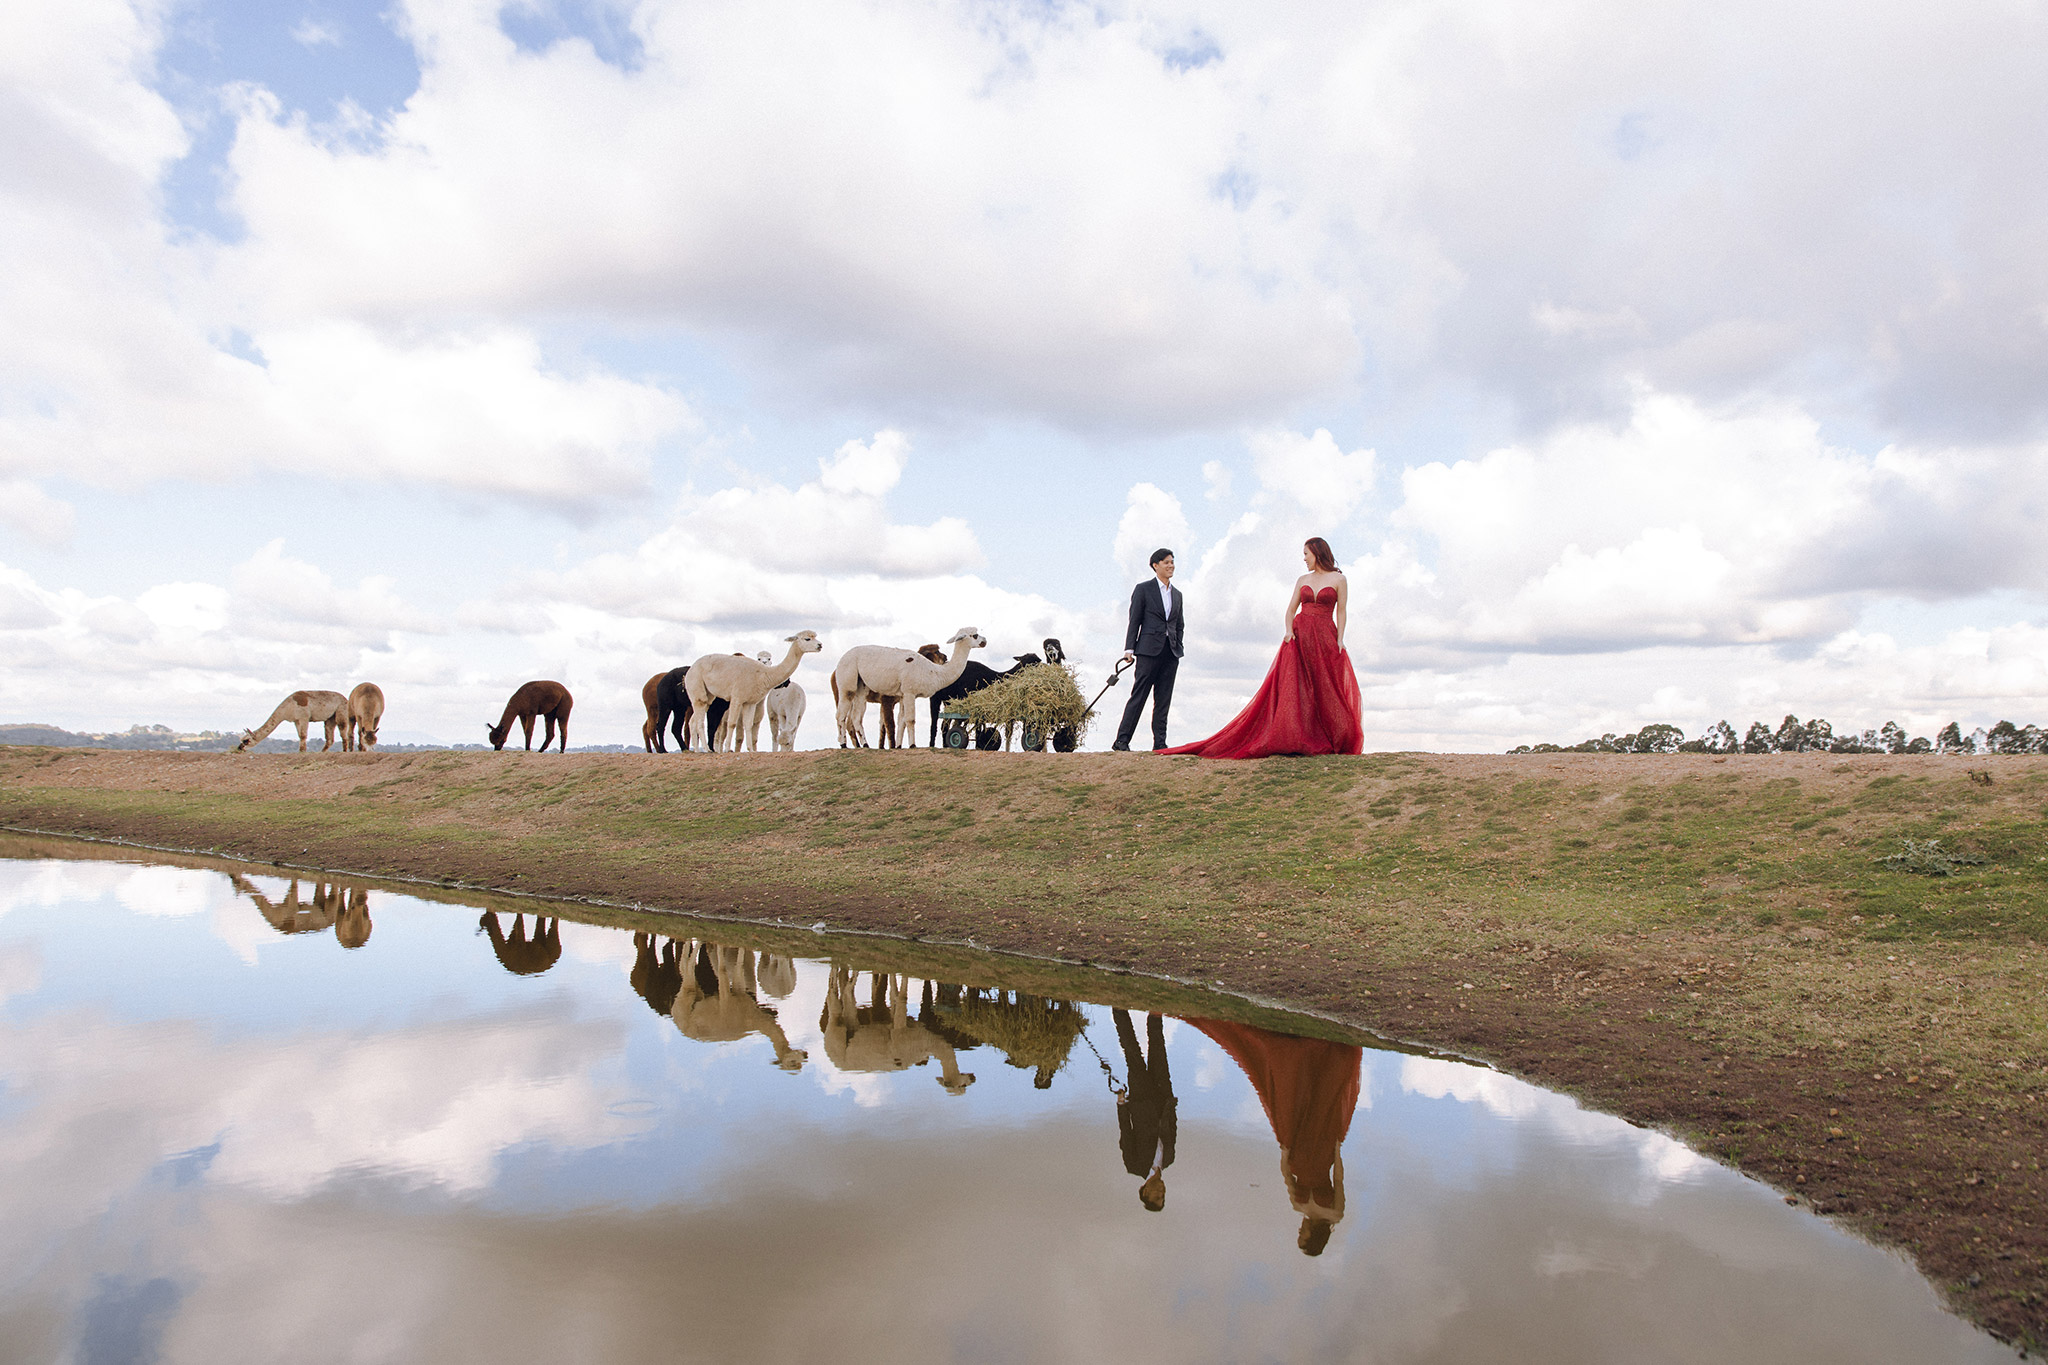 Melbourne Pre-Wedding Photoshoot at Alpaca Farm, Fitzroy Gardens & Brighton Beach by Freddie on OneThreeOneFour 8